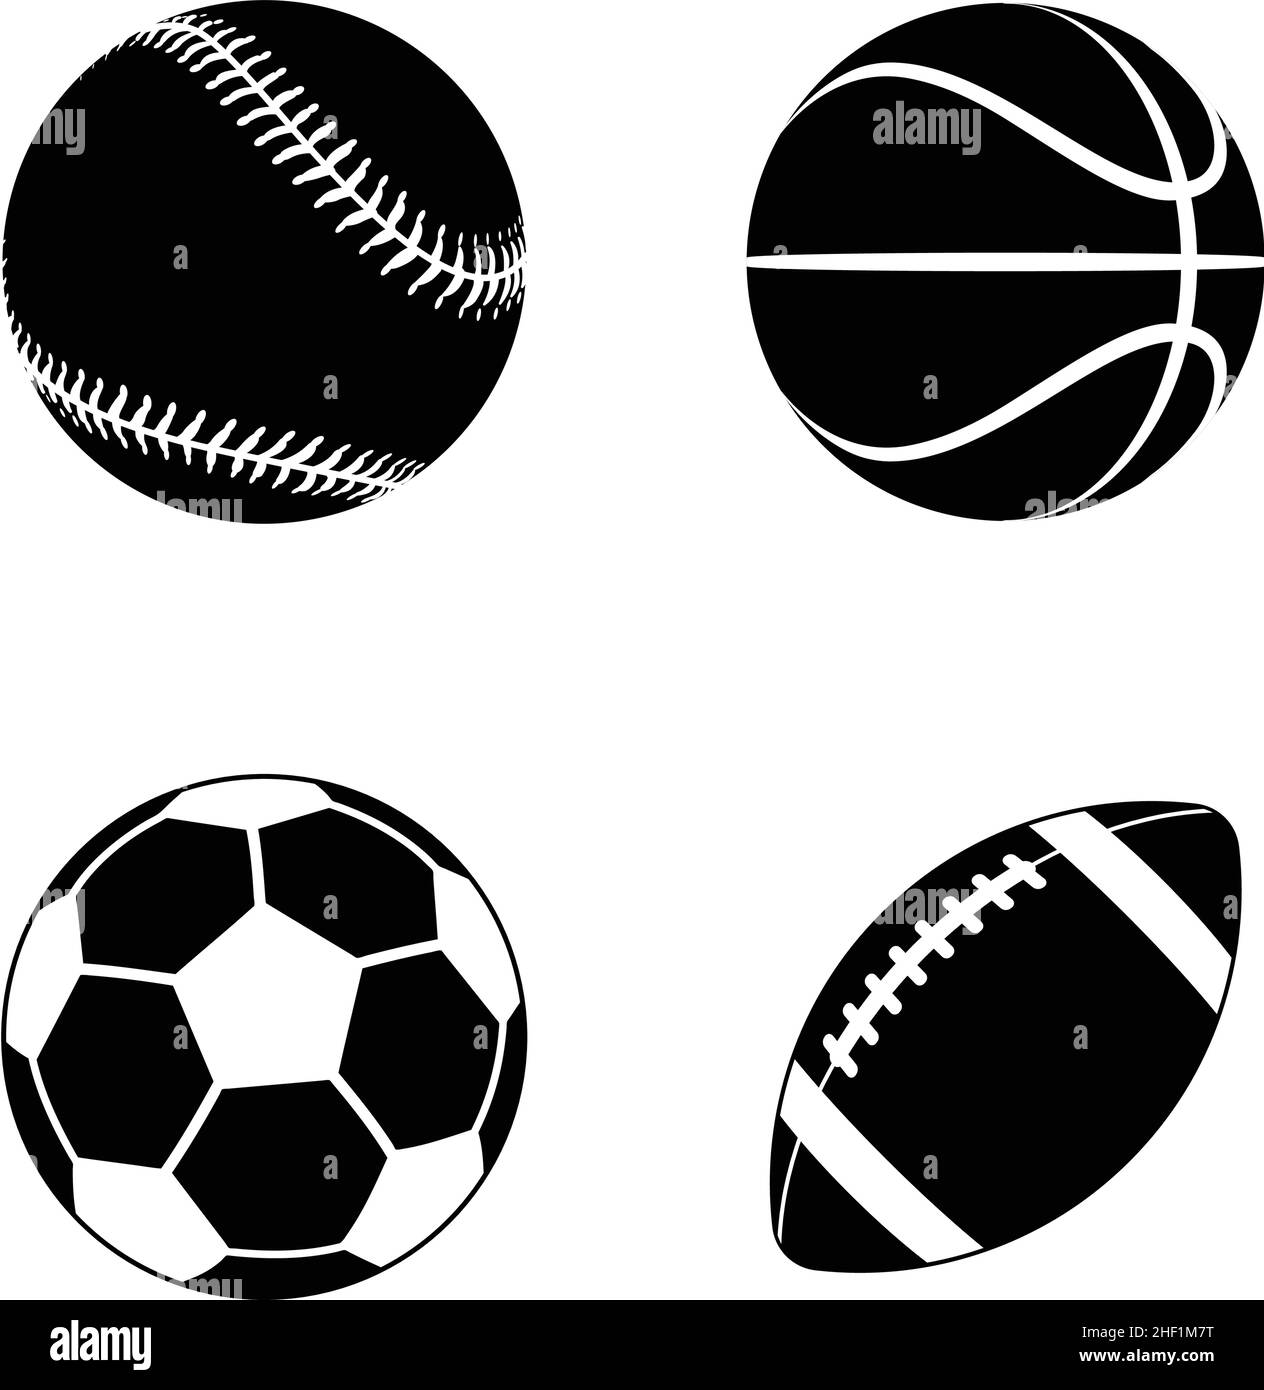 varie cartoon stilizzato american sports palle baseball basket calcio football gridiron silhouette vettoriale icona set isolato su sfondo bianco Illustrazione Vettoriale